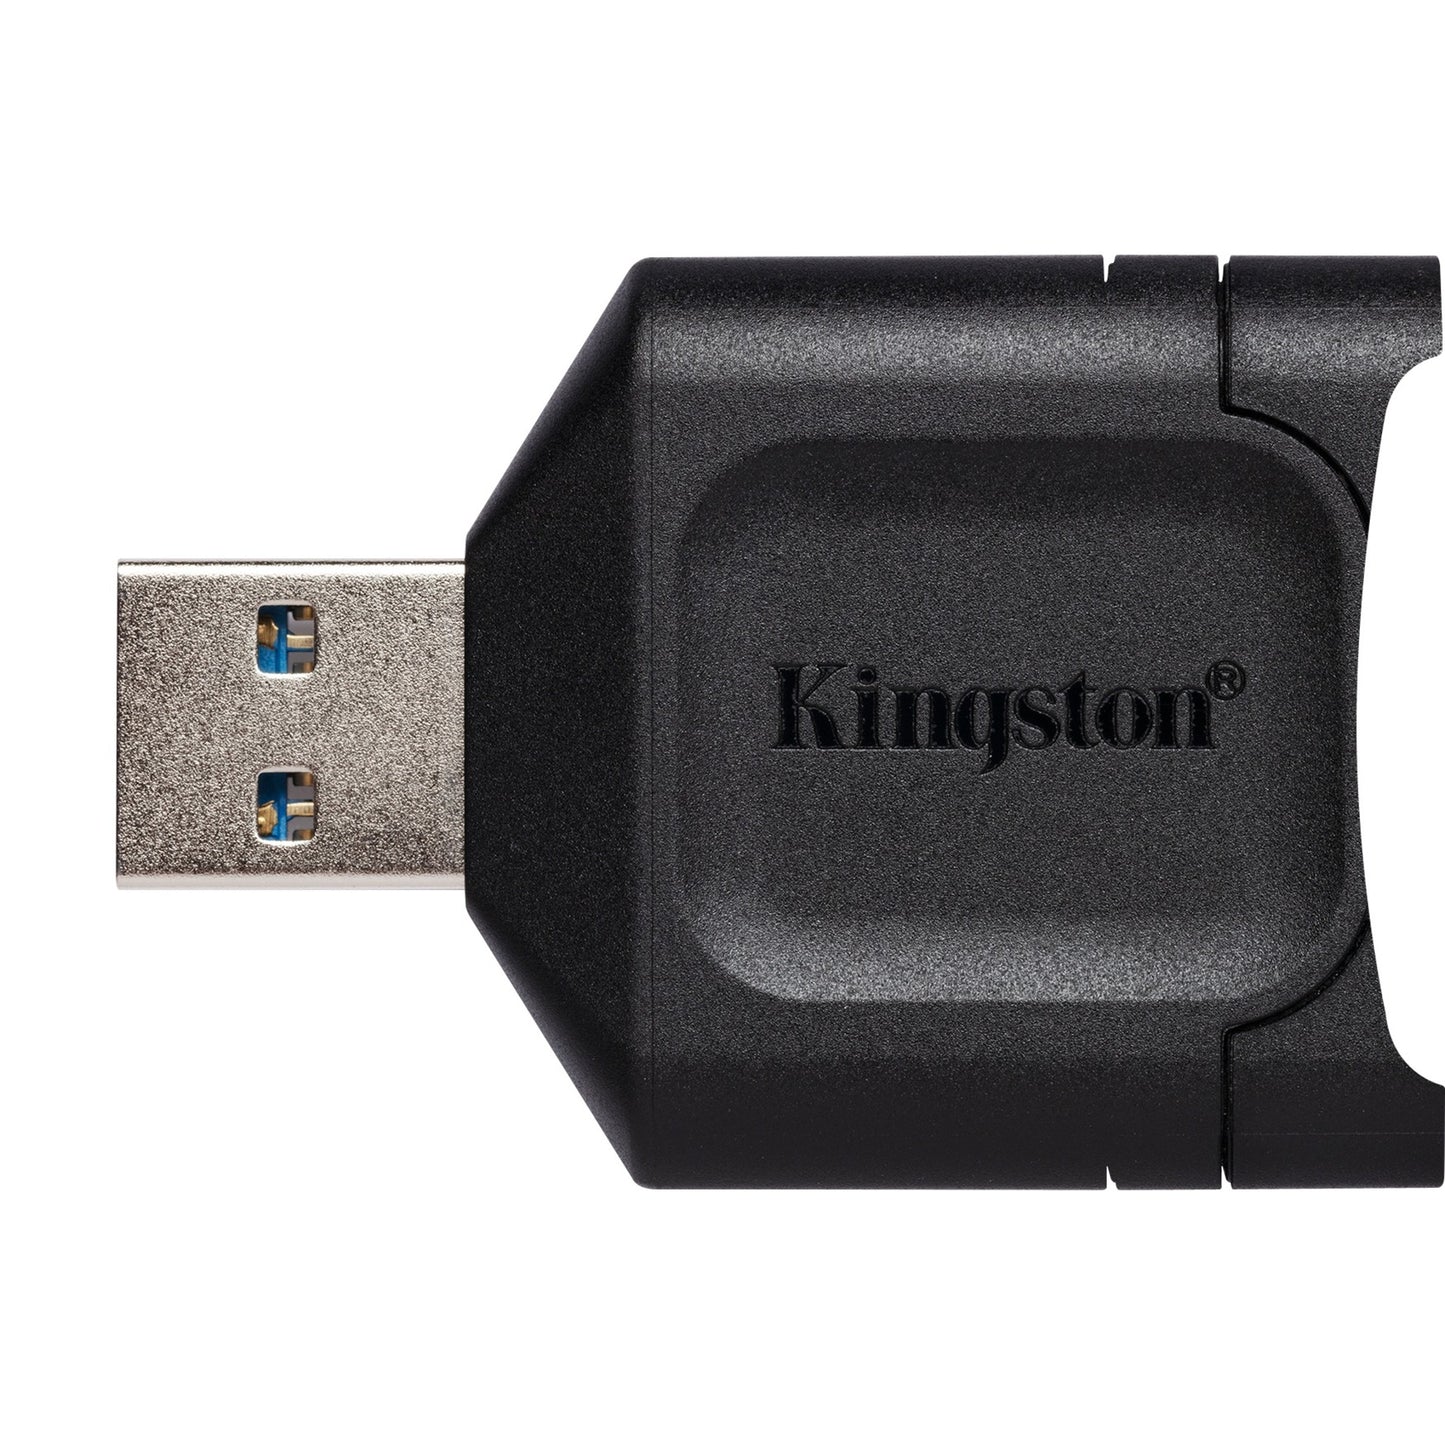 Kingston Mobilelite Plus SD Reader